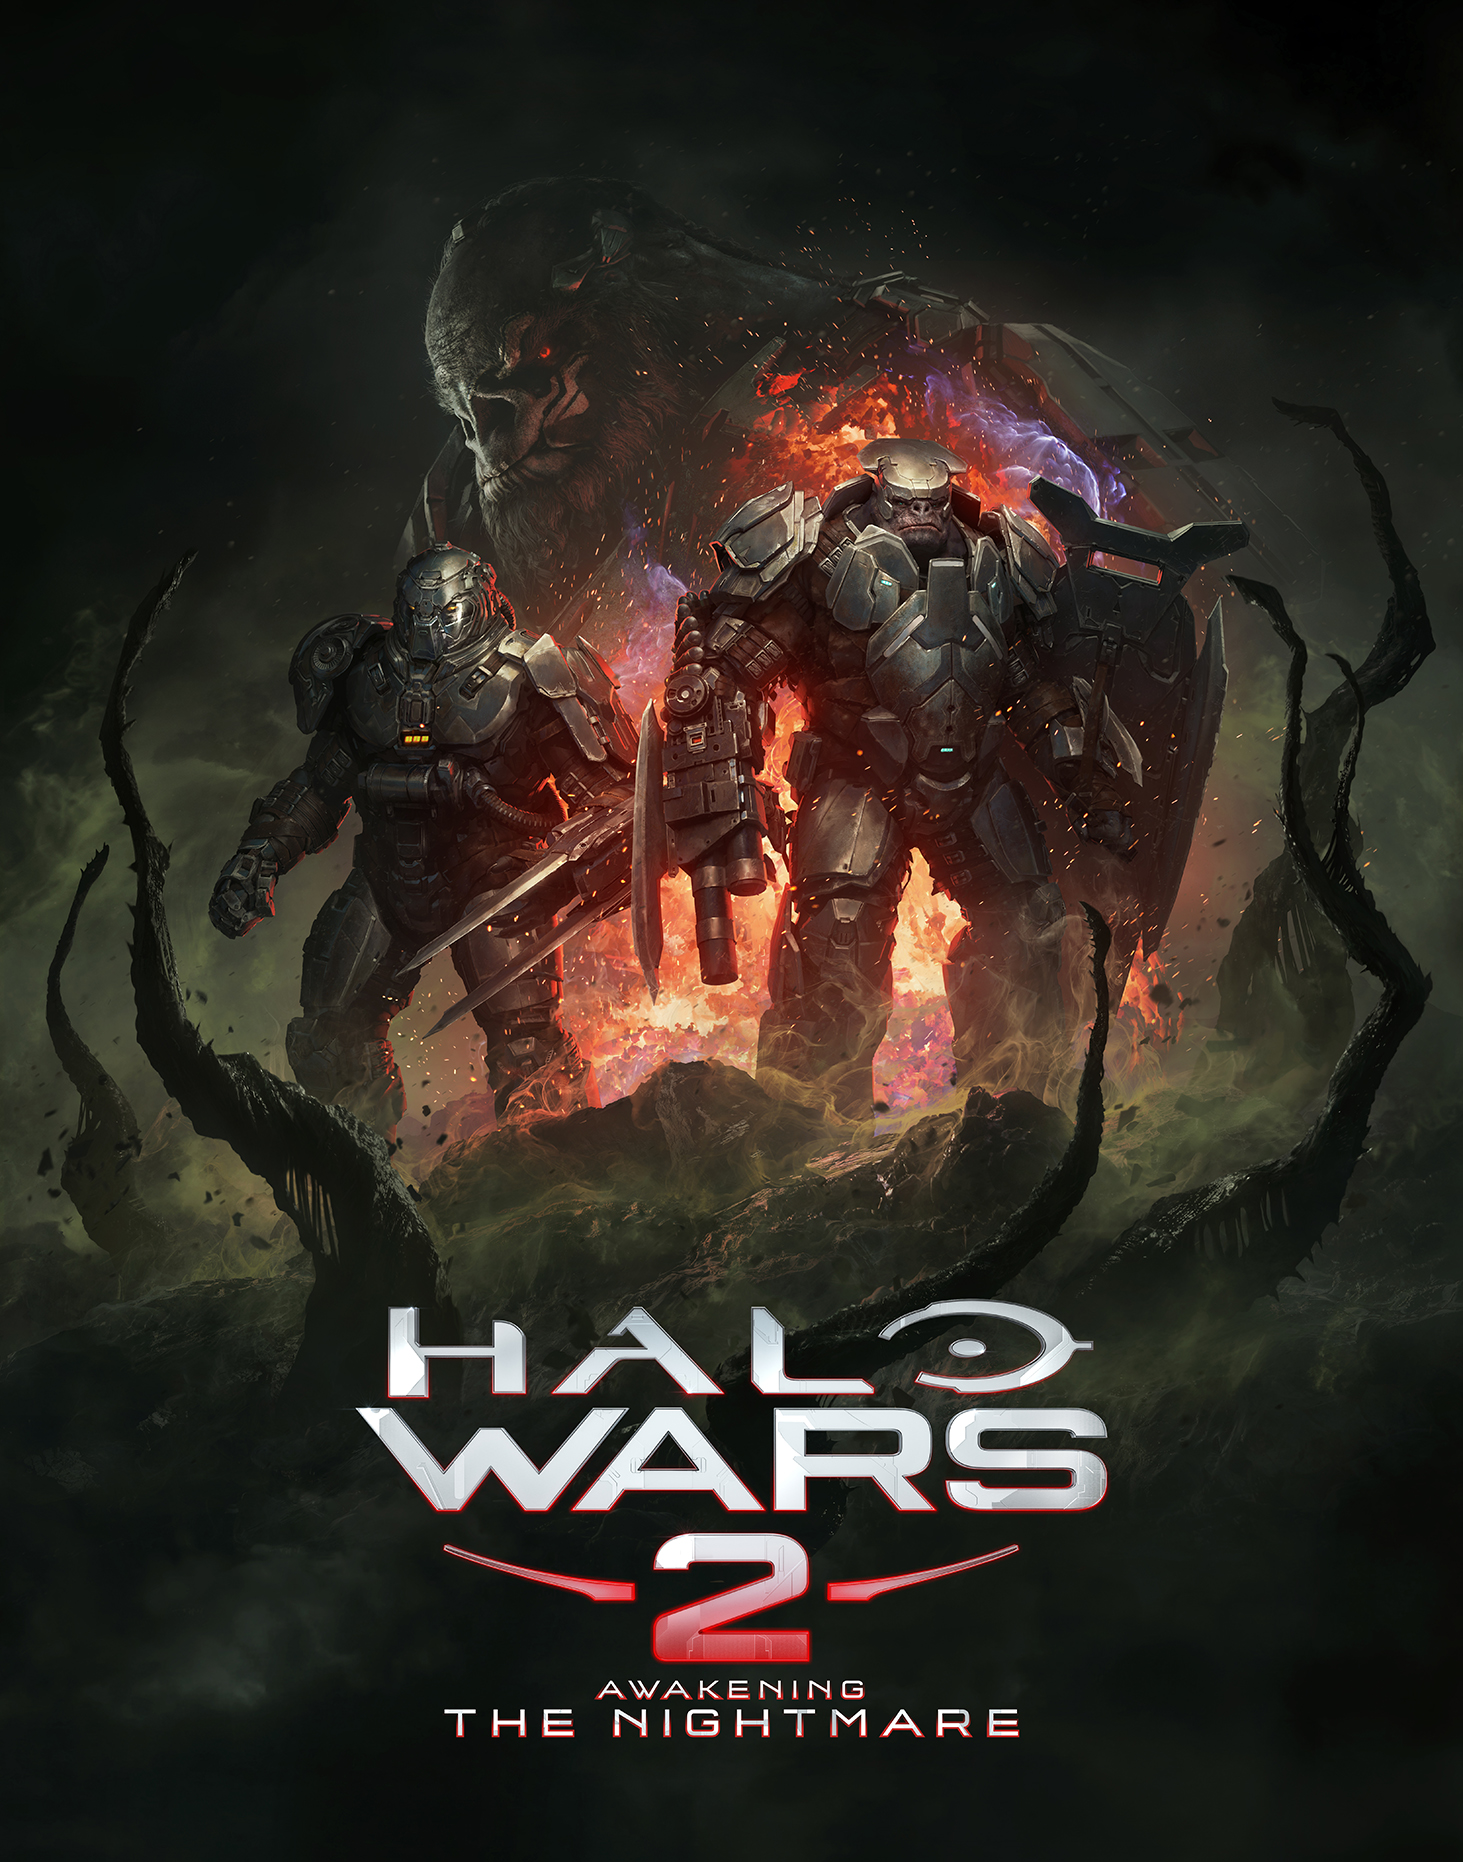 halo wars 2 awakening the nightmare trainer